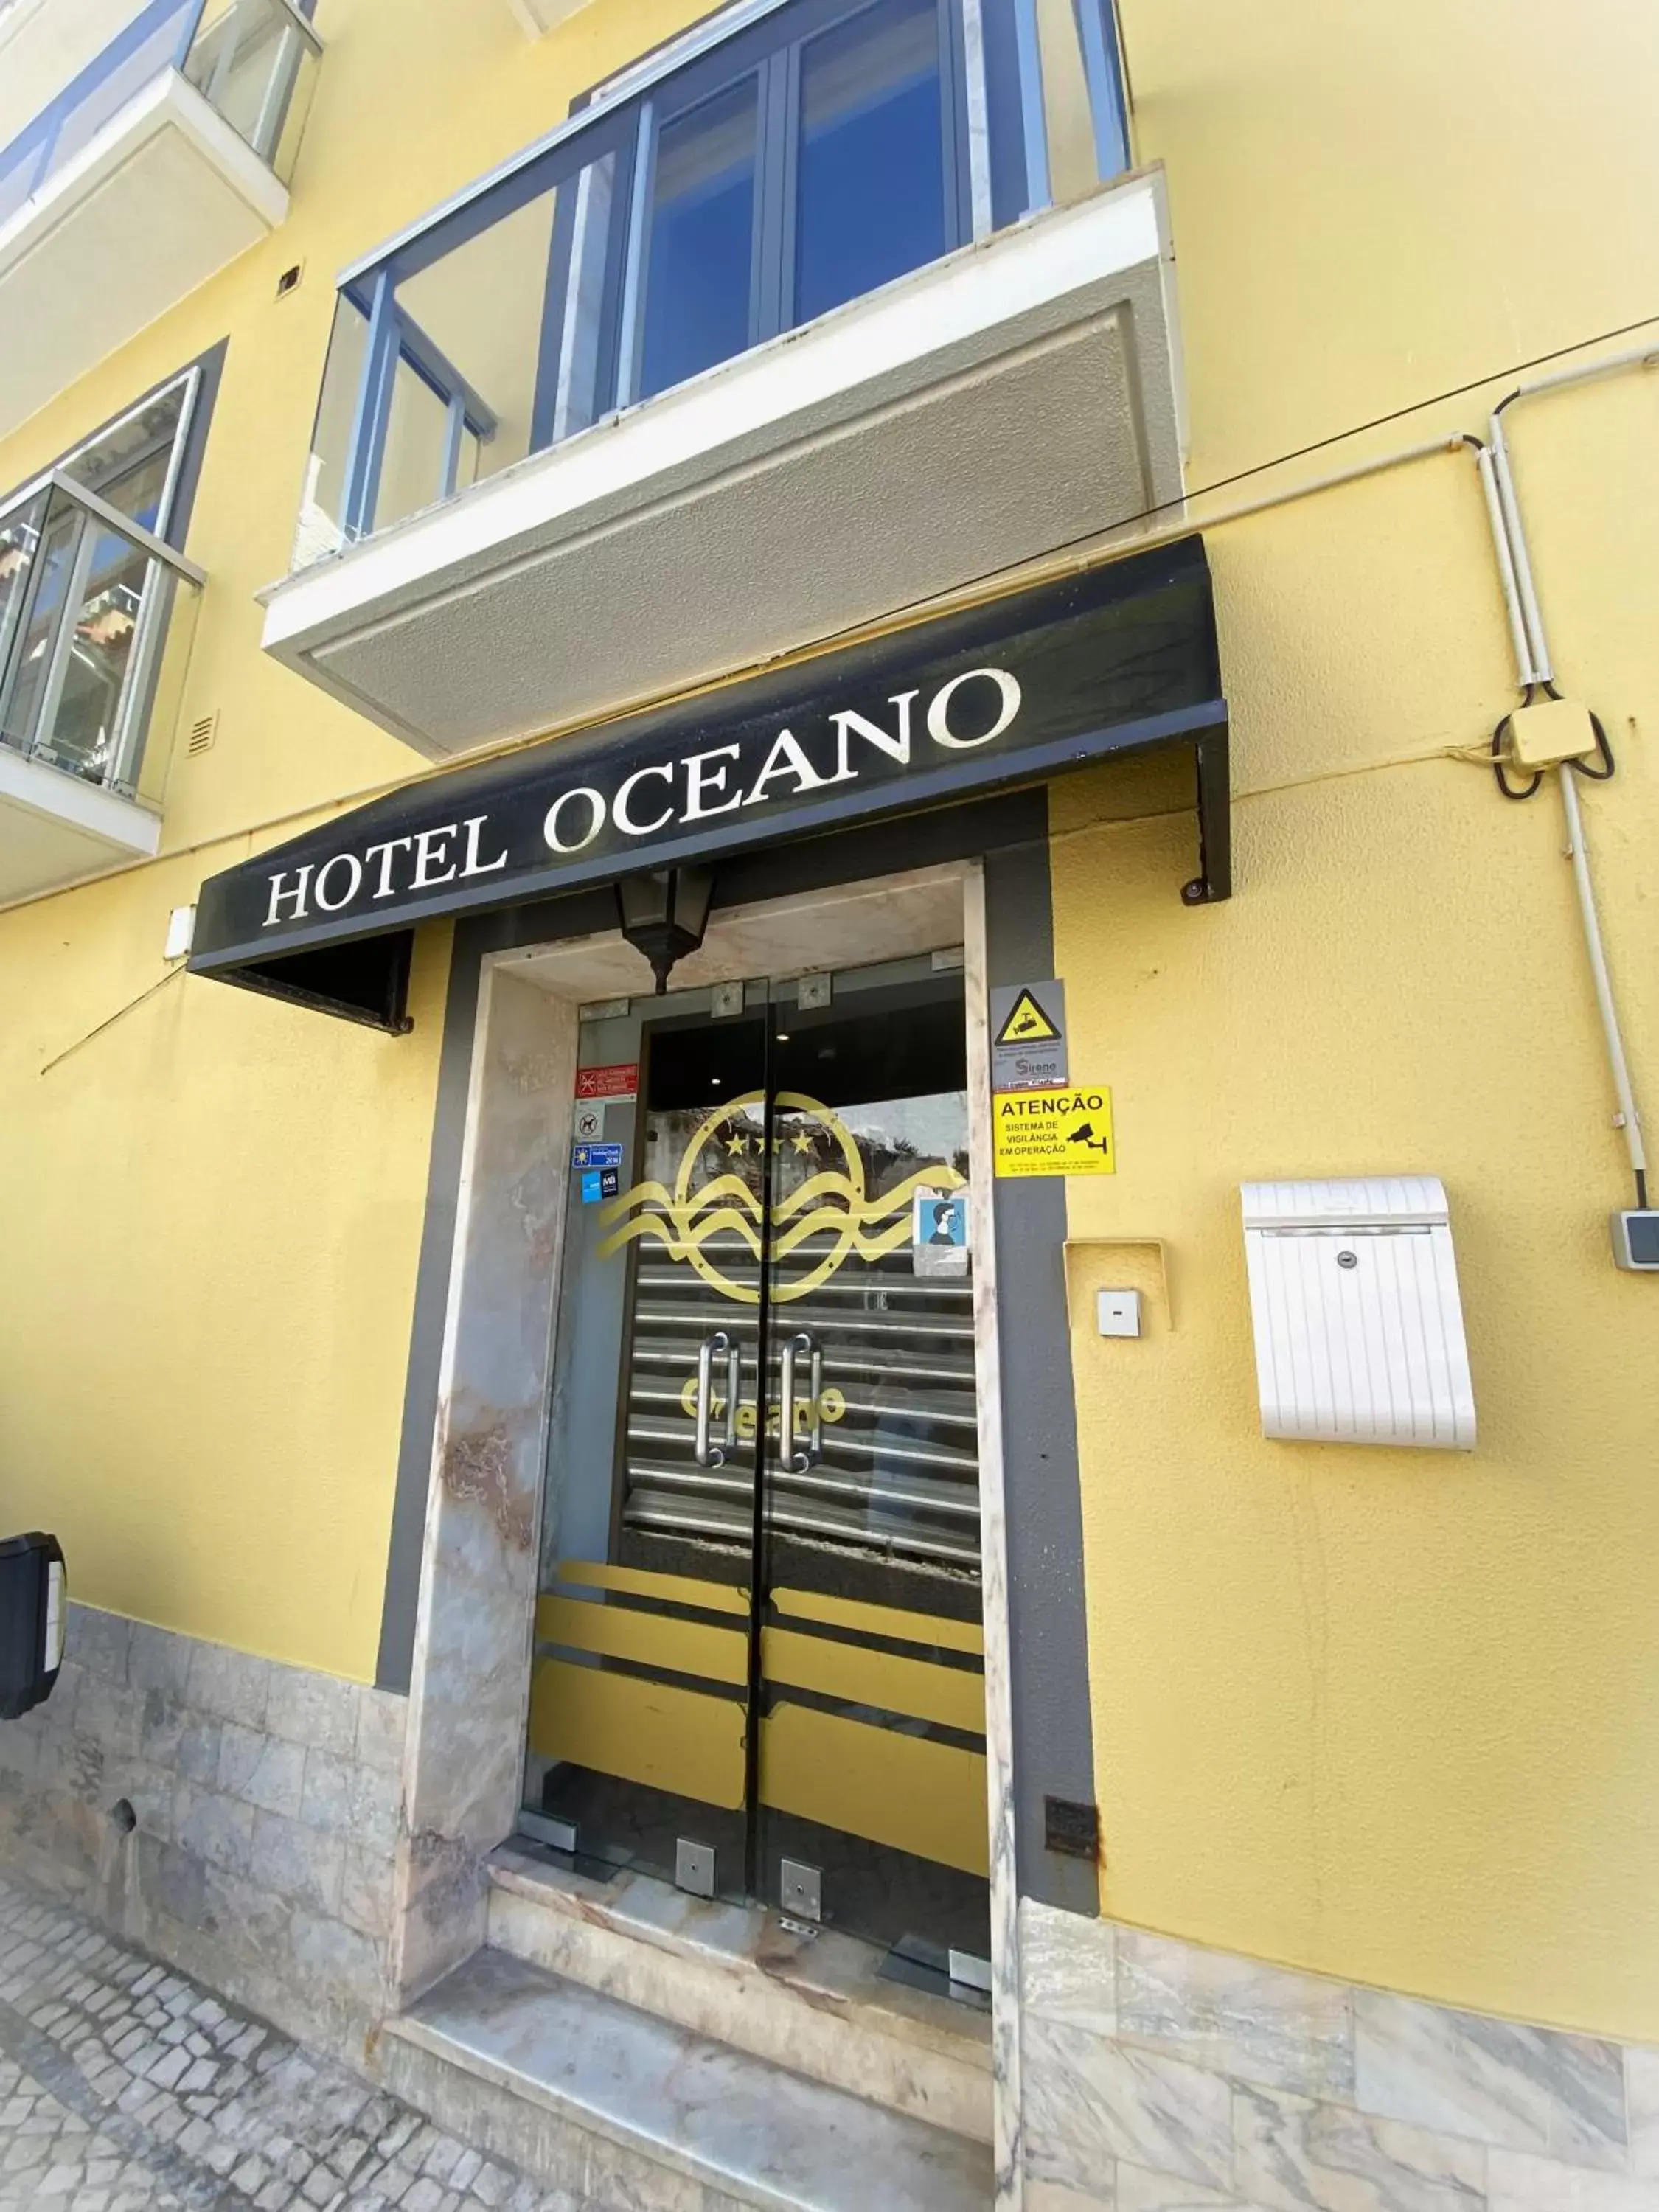 Property building in Hotel Oceano